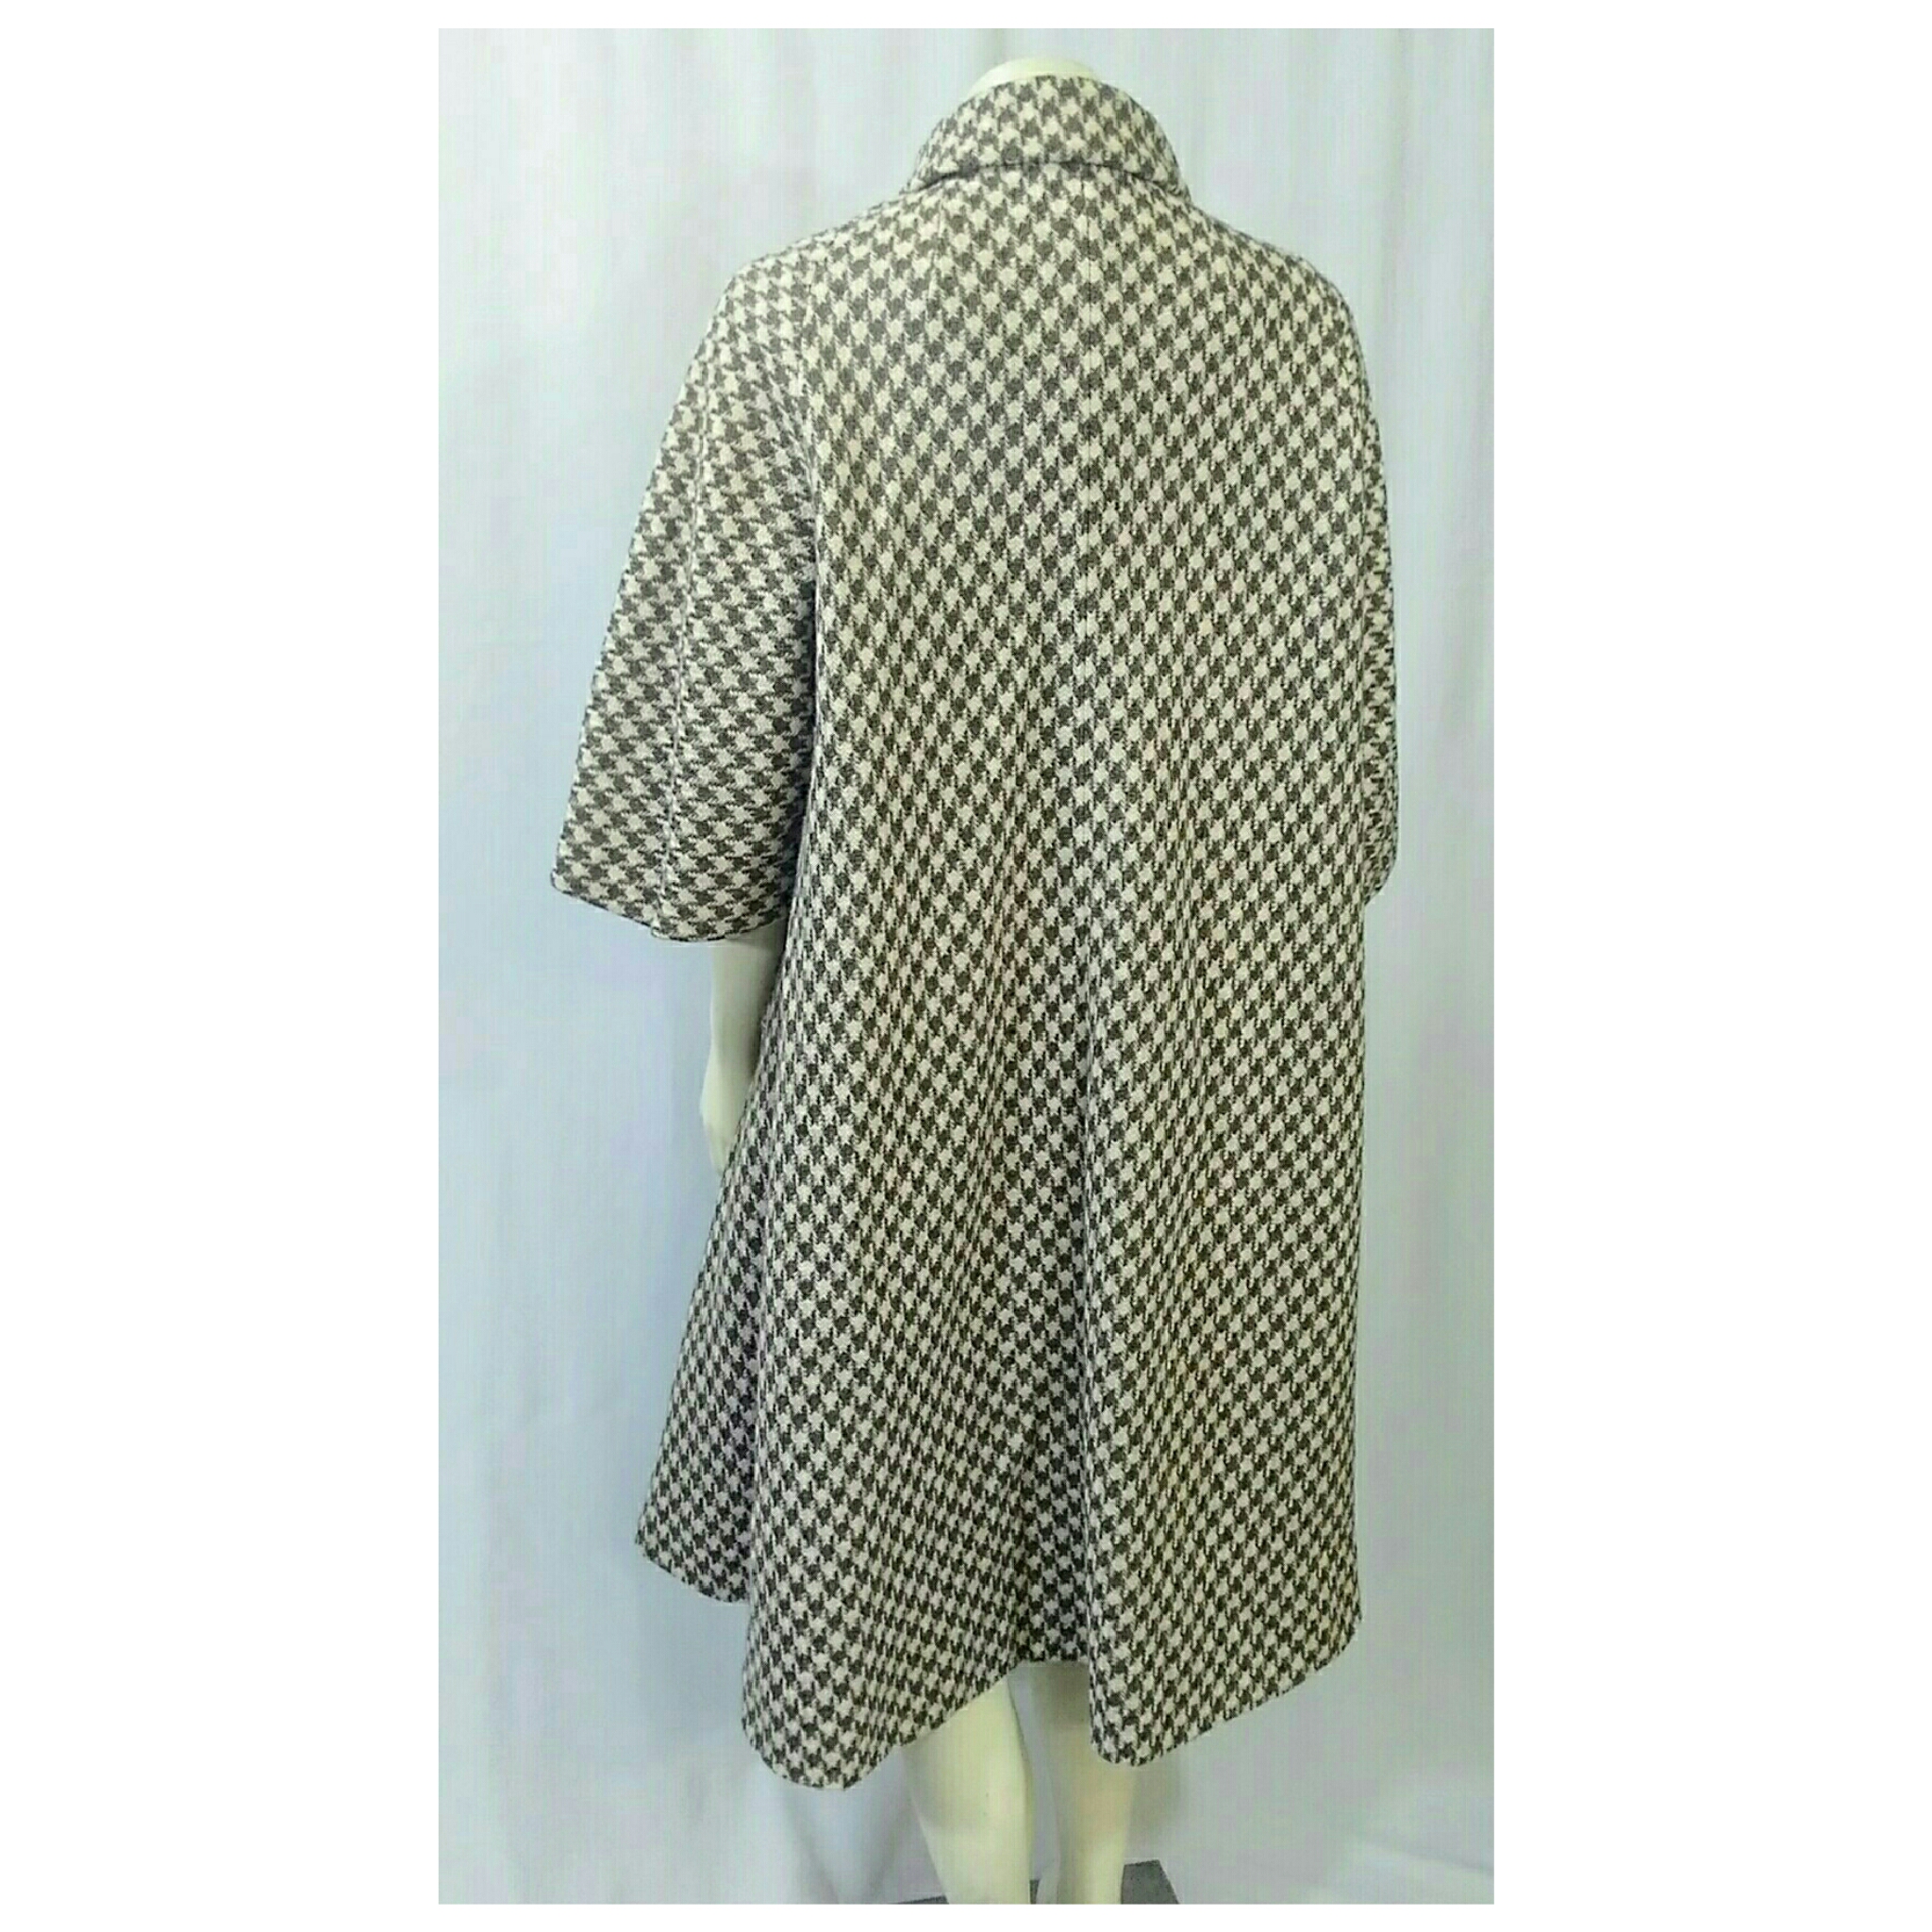 Vintage 1950's Swing Coat Wool Tweed, Tan and Beige Checkered; 1950's Wool Swing Coat